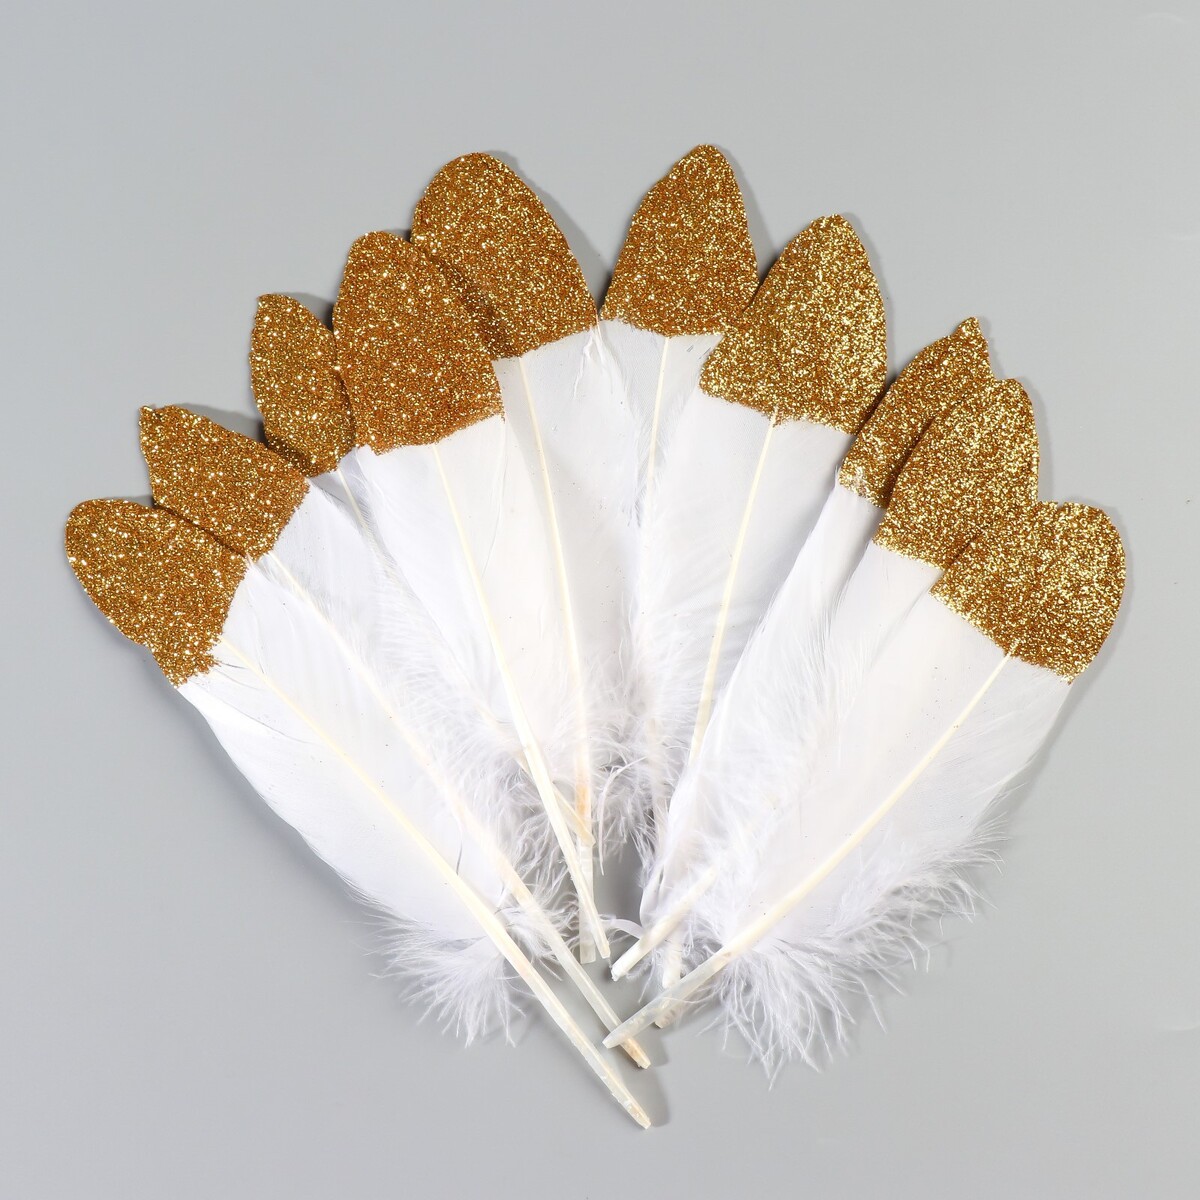 Набор перьев гуся 15-20 см, 10 шт, белый с золотой крошкой набор перьев гуся 13 18 см 20 шт светло сиреневый